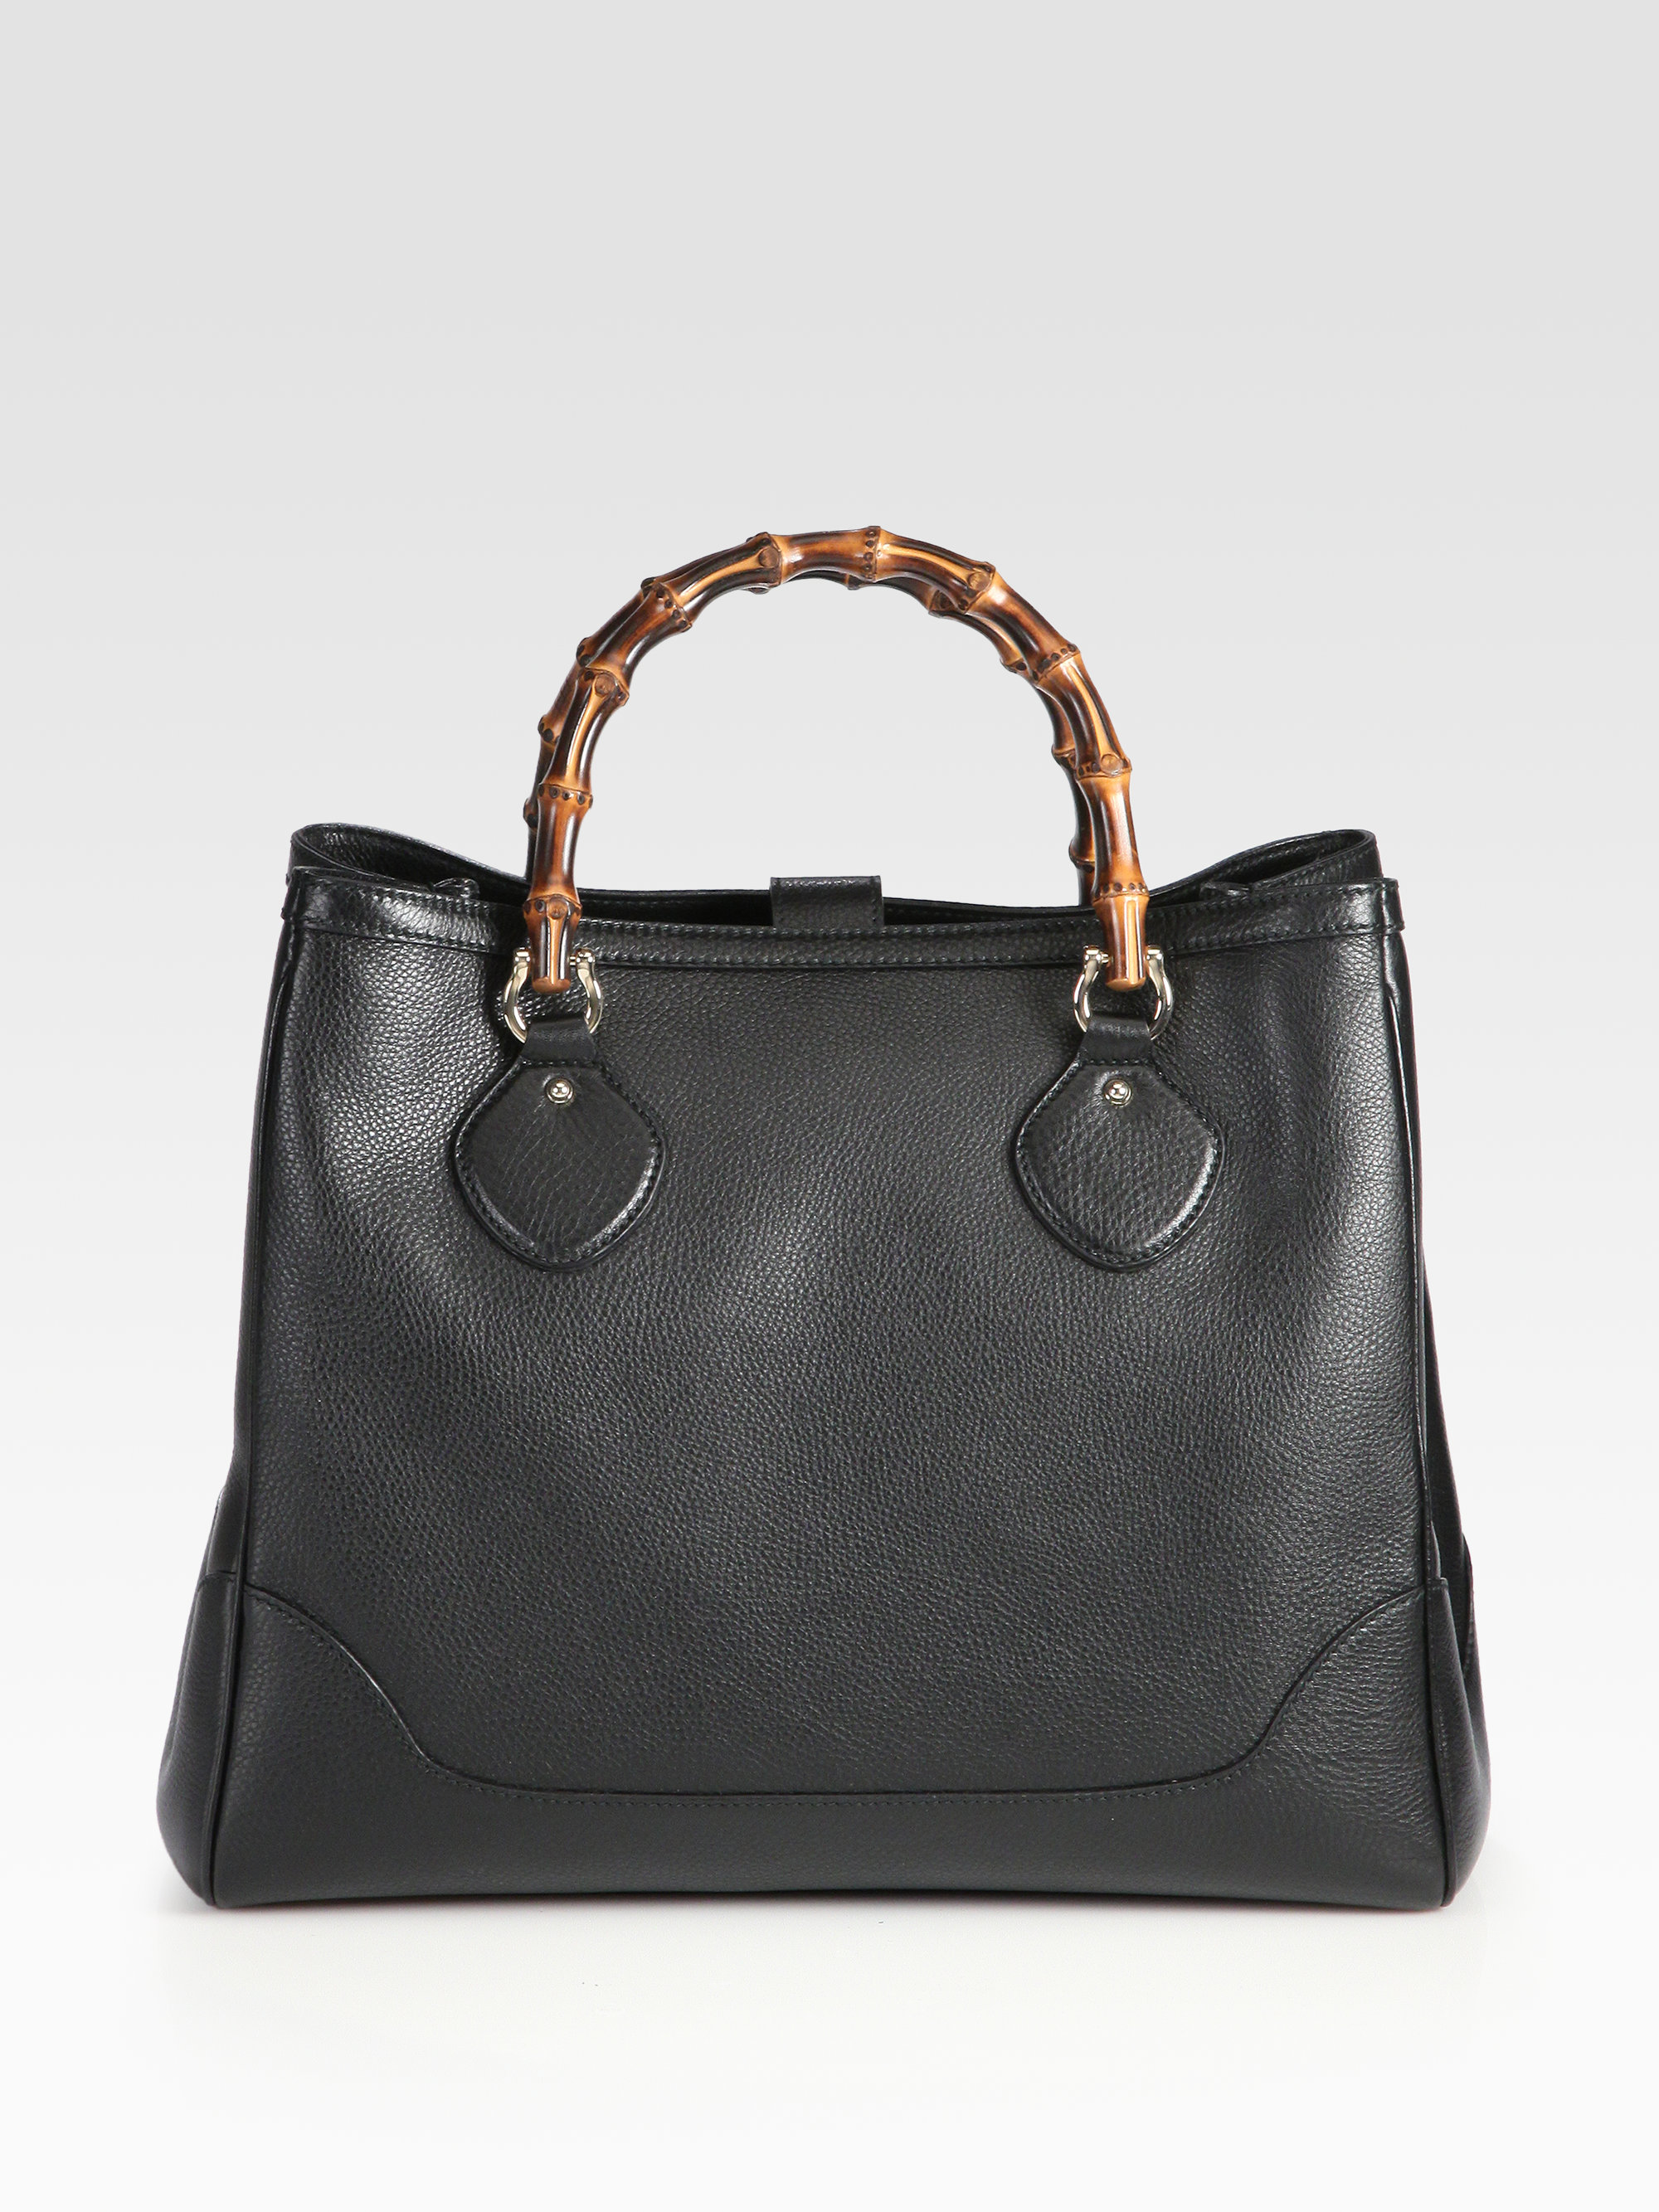 Gucci Diana Bamboo Medium Tote Bag in Black | Lyst